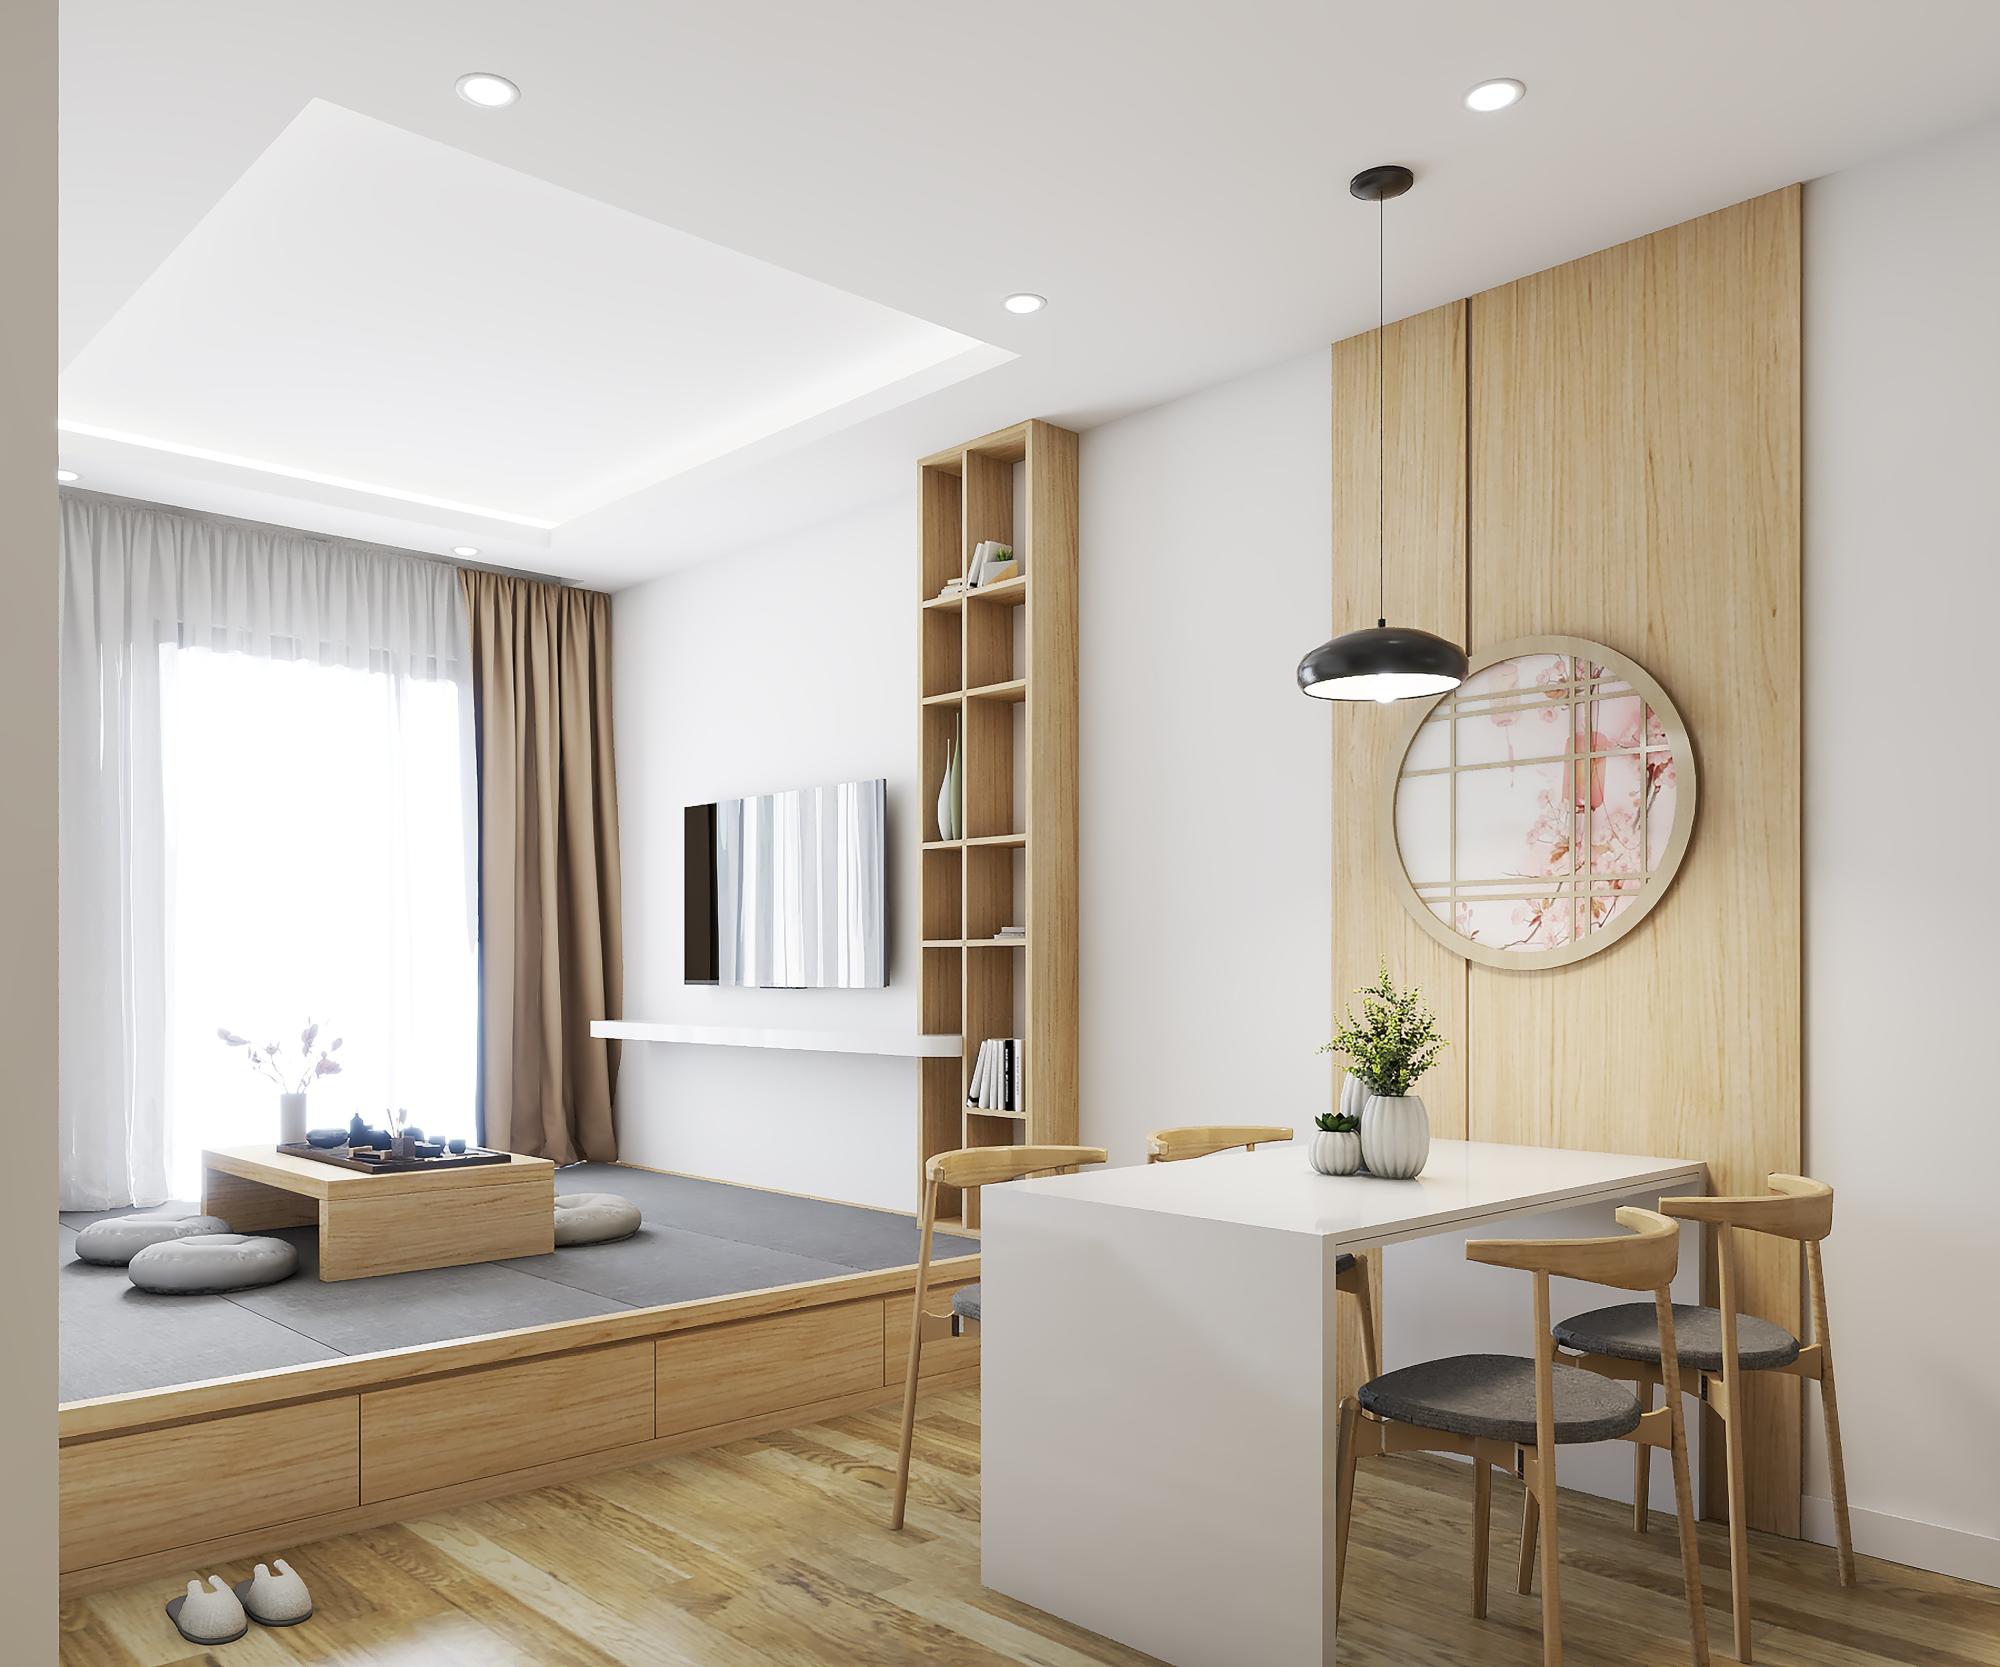 Có rất nhiều phong cách thiết kế nội thất chung cư khác nhau mà bạn có thể lựa chọn